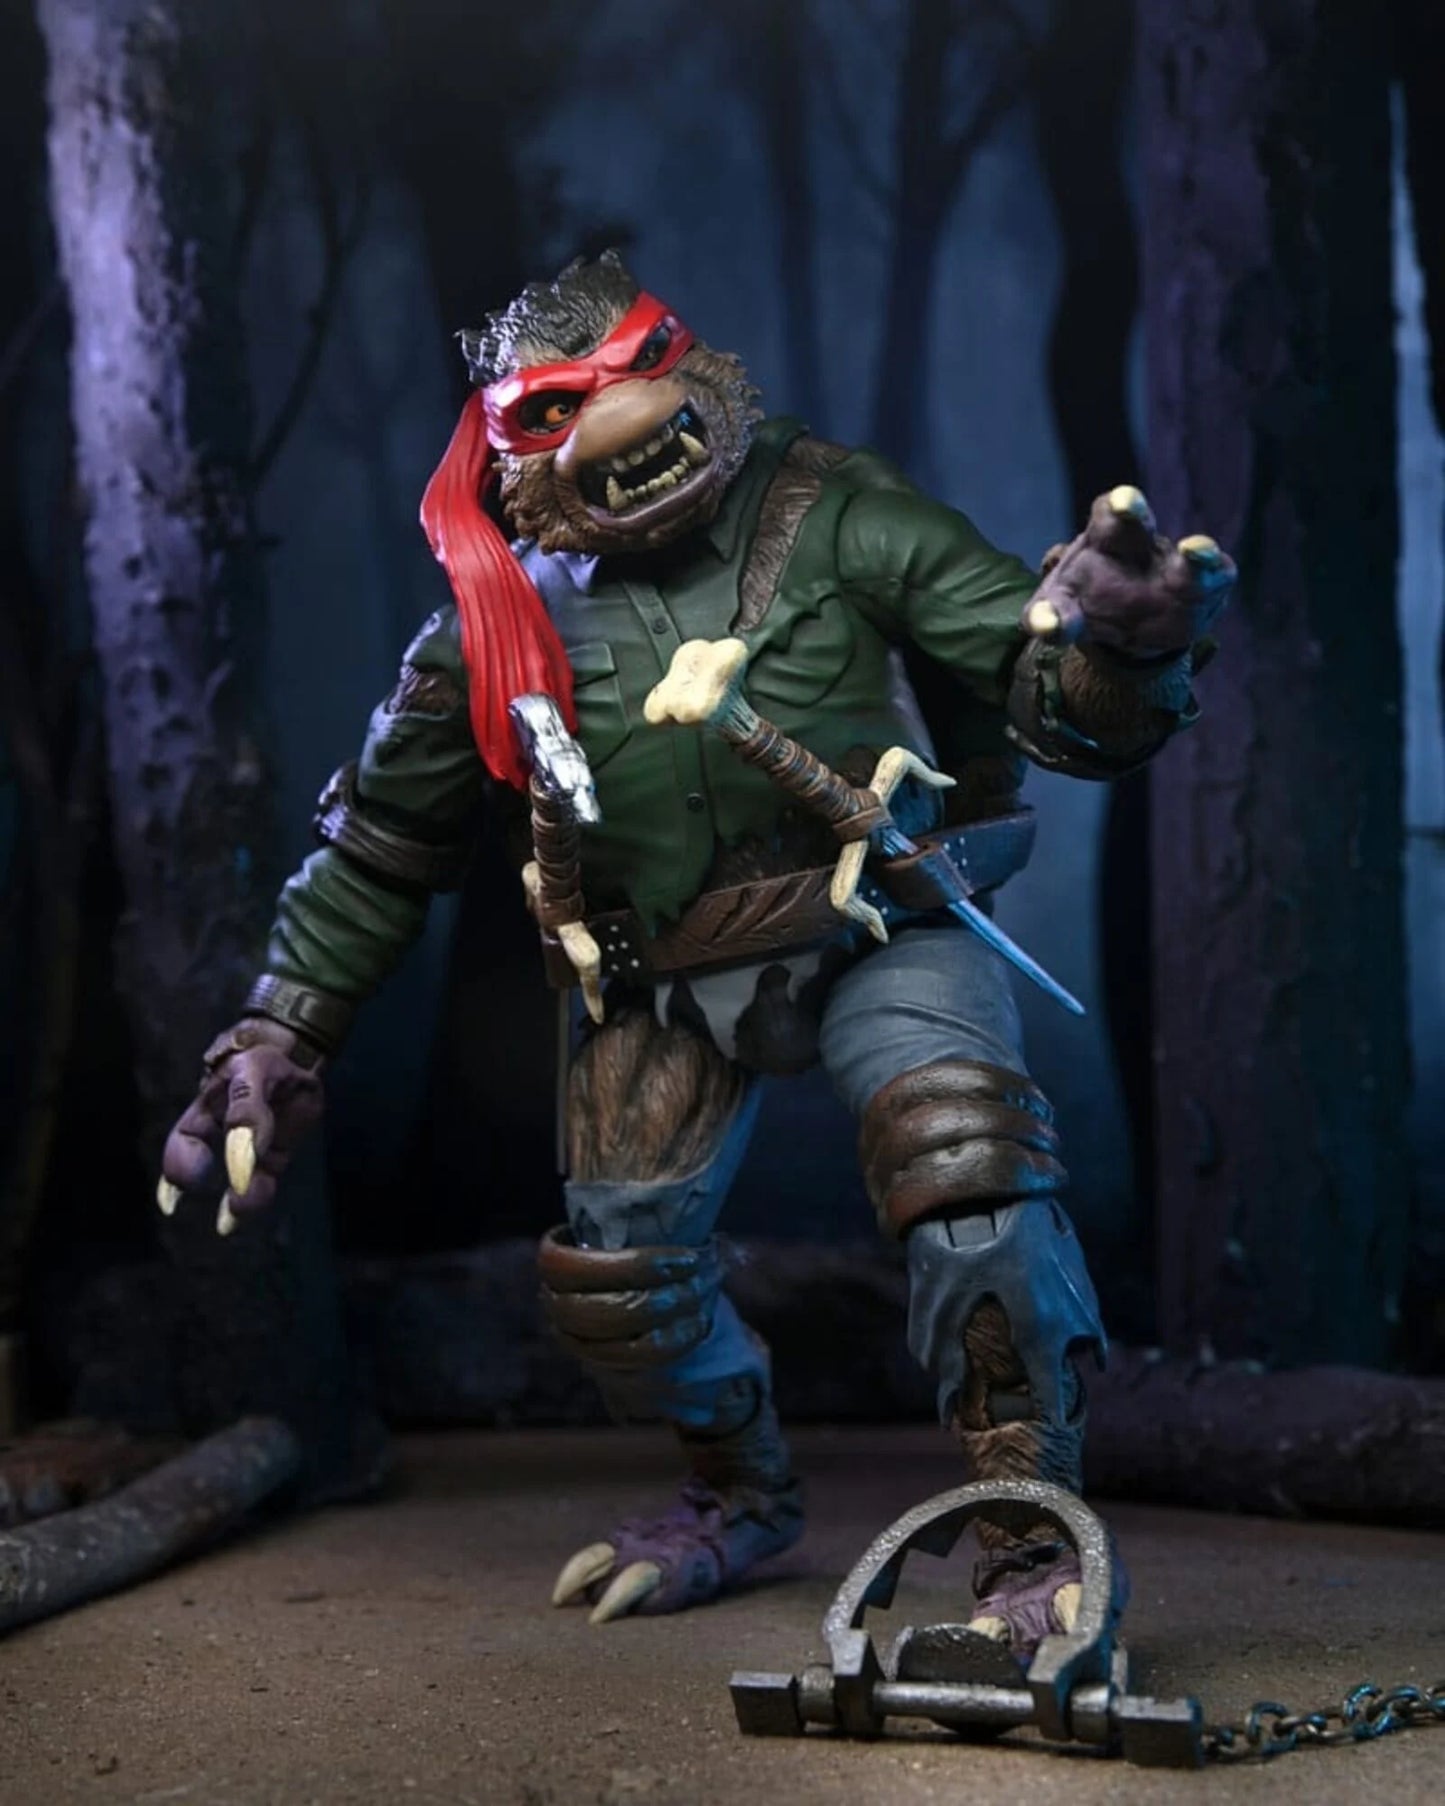 NECA -  Universal Monsters -  Teenage Mutant Ninja Turtles Raphael as the Wolfman